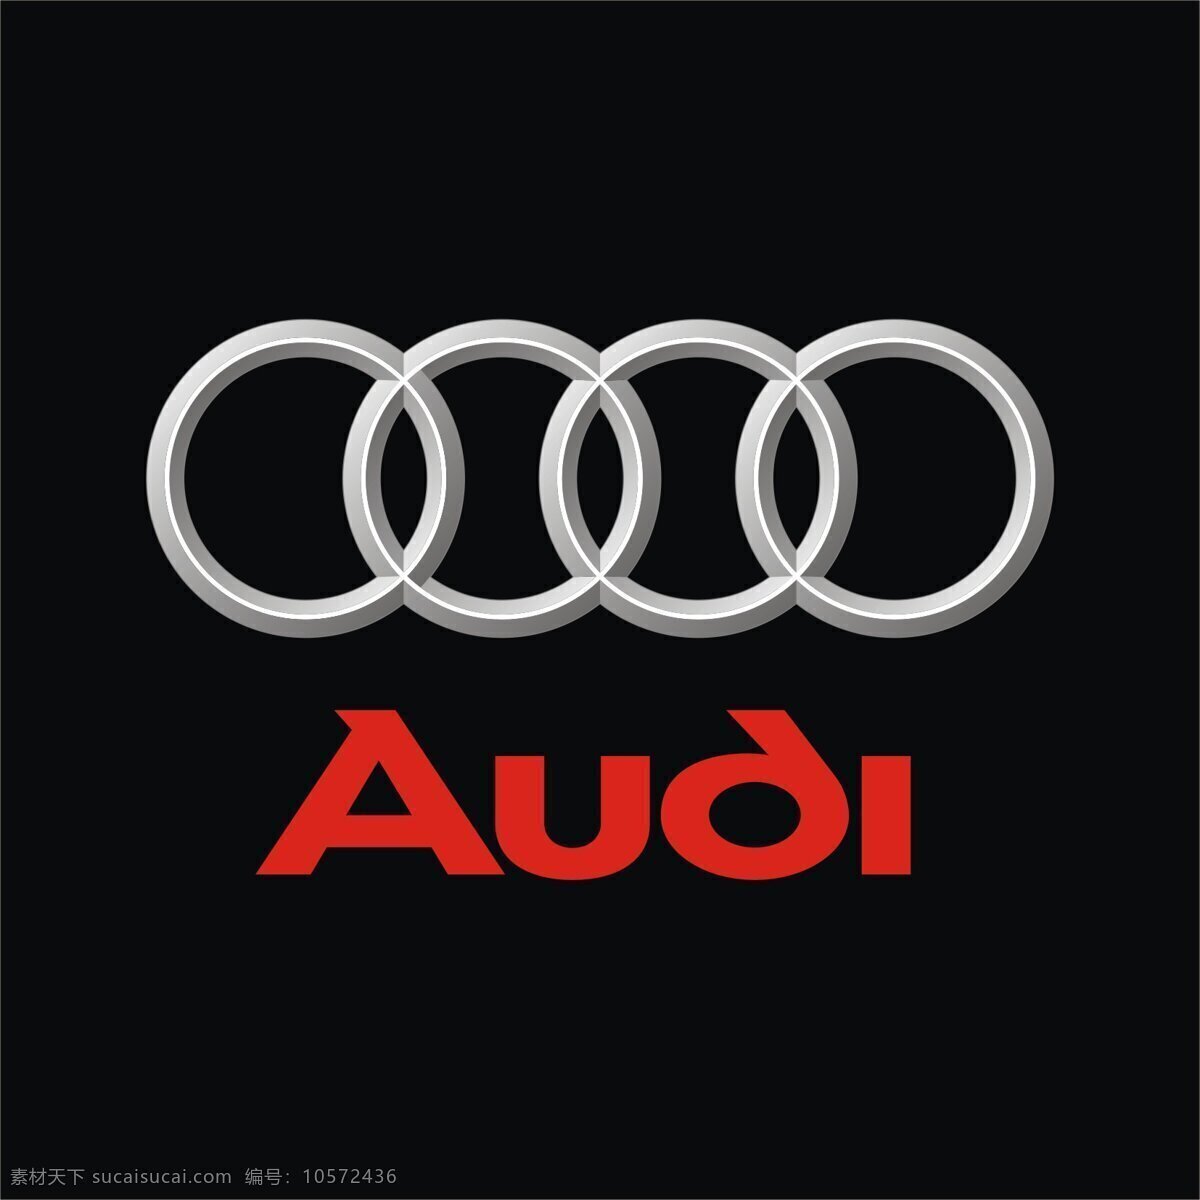 汽车logo cdr格式 奥迪logo 奥迪标志 audi 品牌汽车 奥迪 logo 矢量 矢量图 其他矢量图